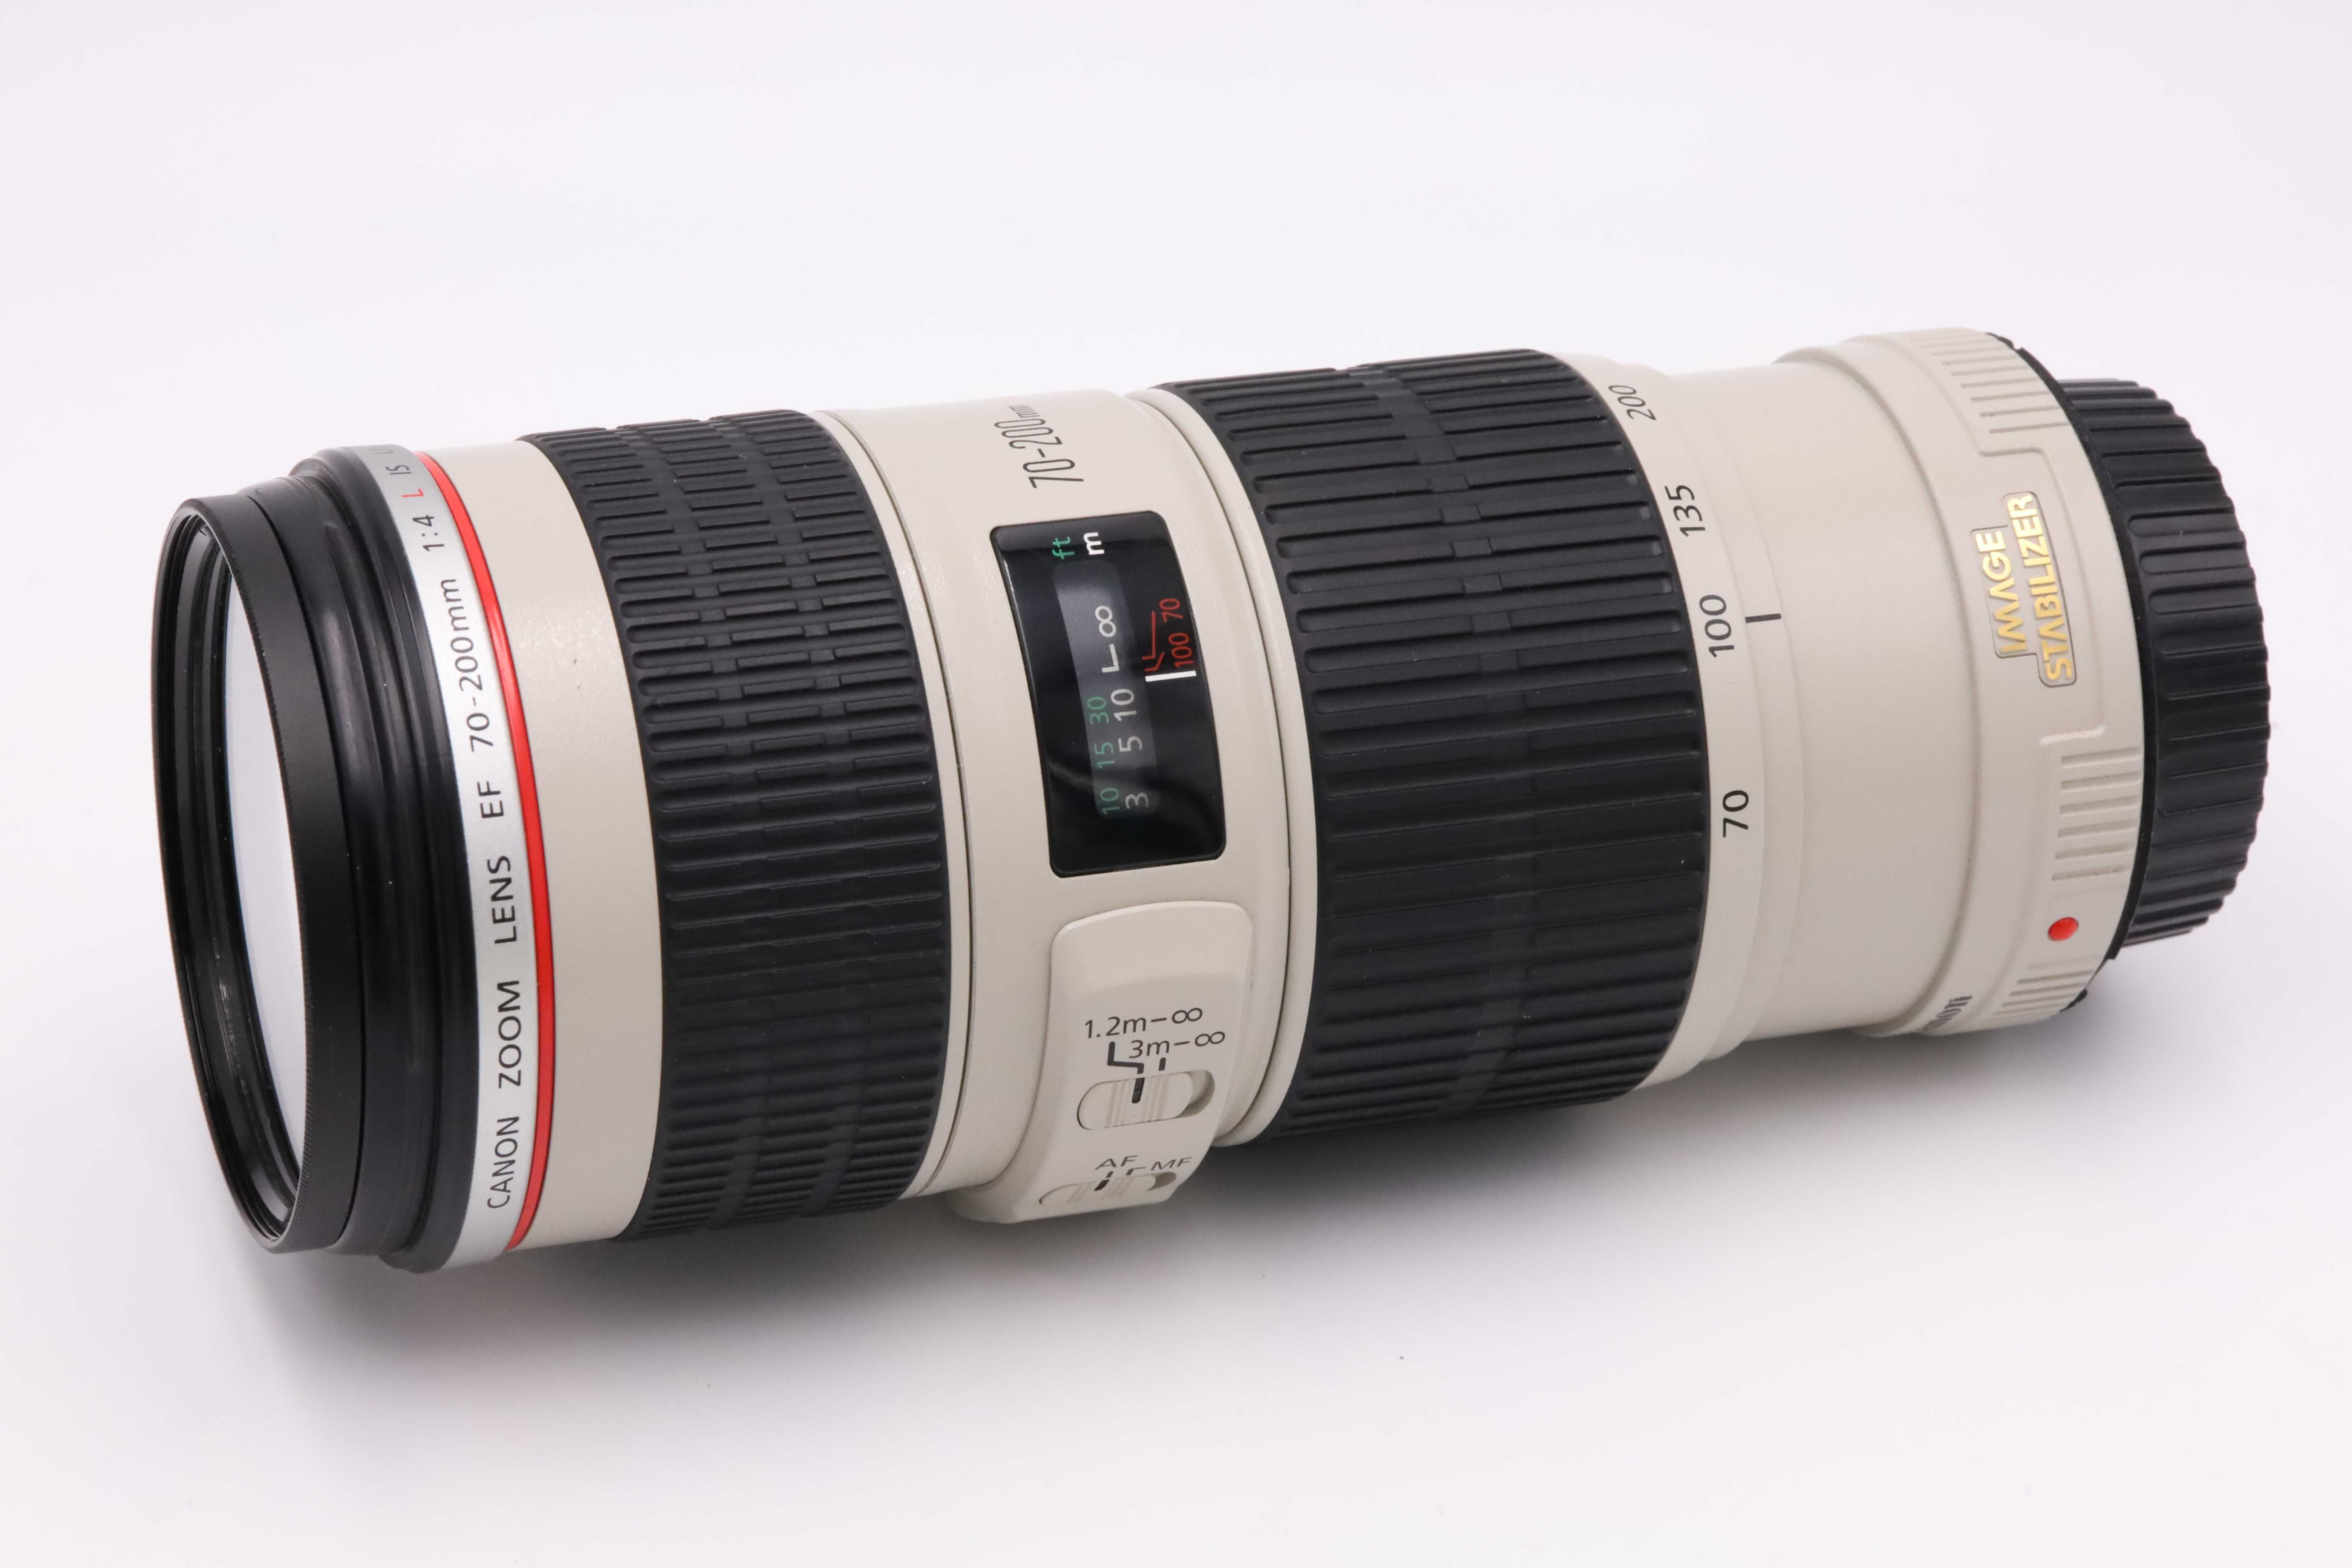 Canon EF 70-200 f4 L IS USM zadbany obiektyw ze stabilizacją filtr UV